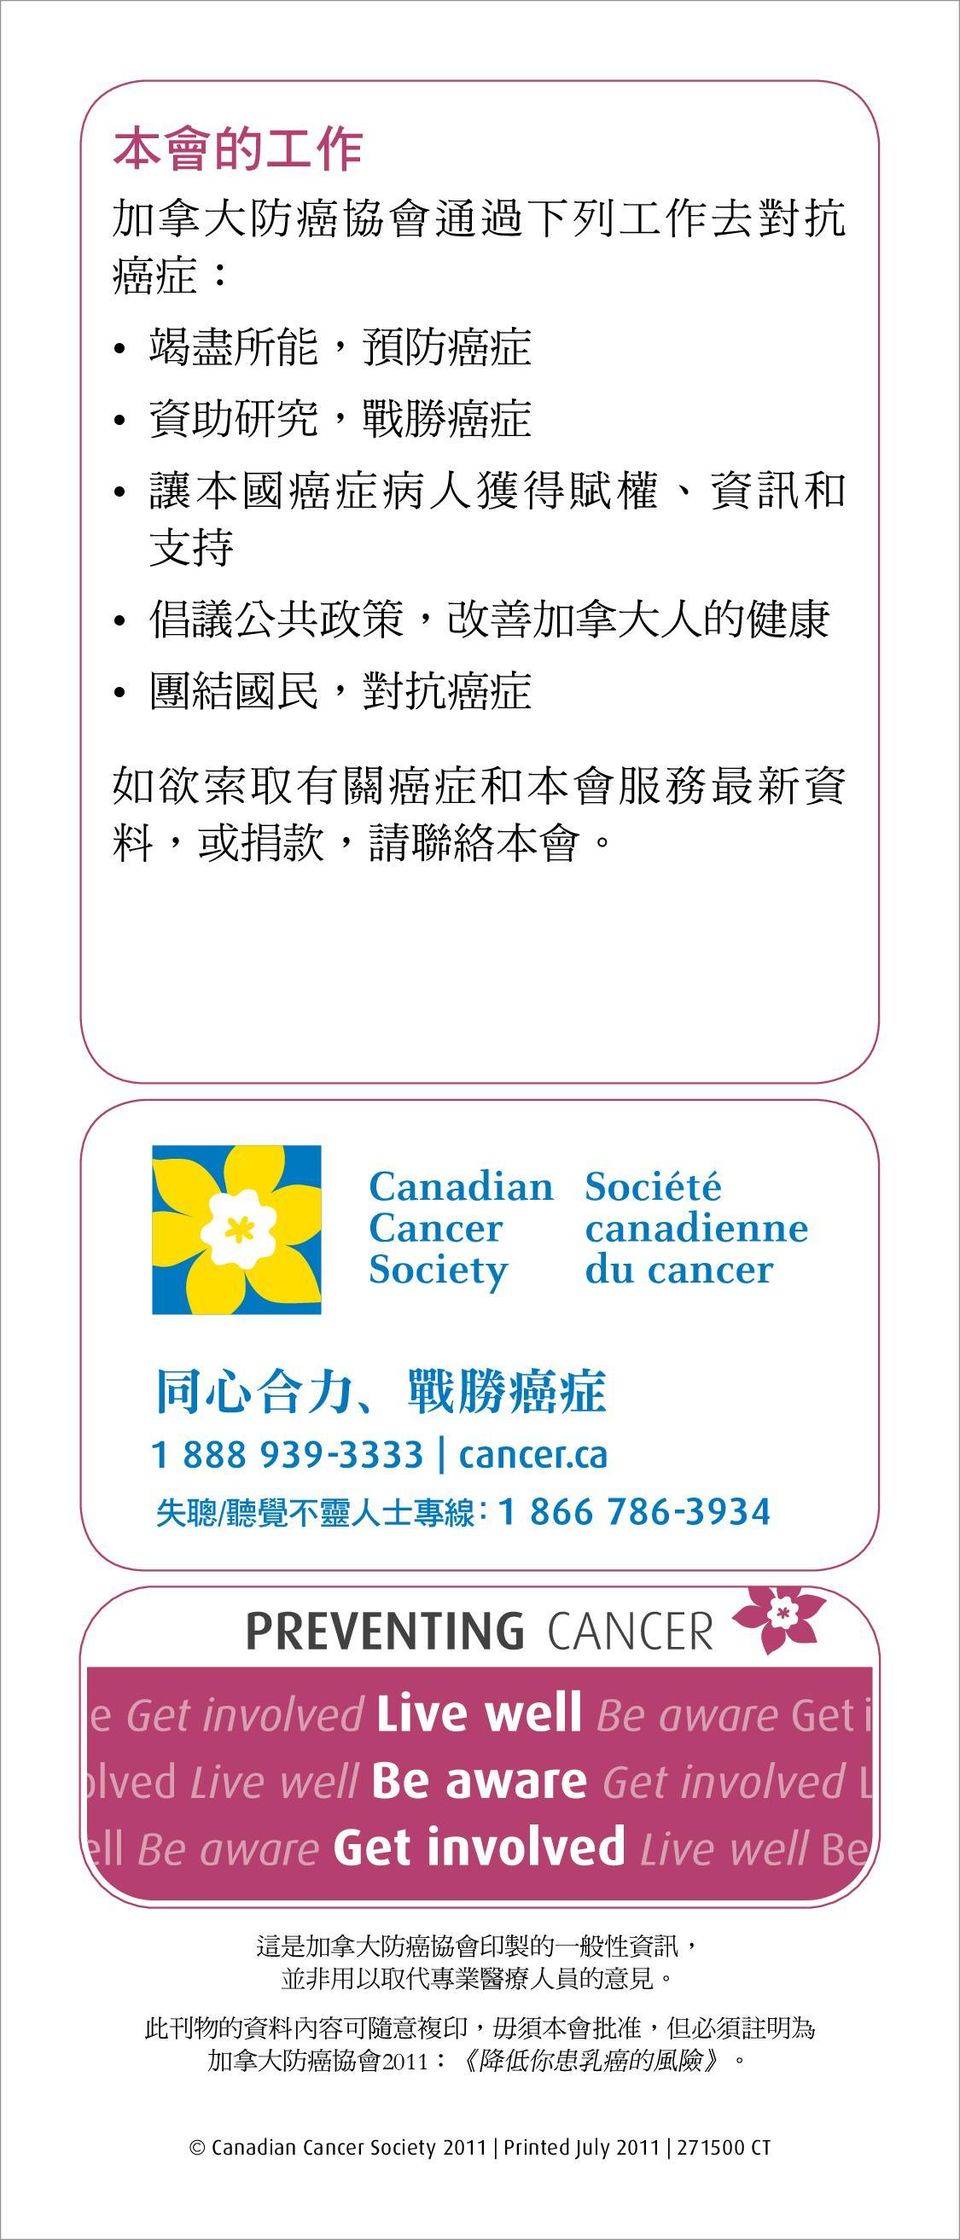 會 這 是 加 拿 大 防 癌 協 會 印 製 的 一 般 性 資 訊, 並 非 用 以 取 代 專 業 醫 療 人 員 的 意 見 此 刊 物 的 資 料 內 容 可 隨 意 複 印, 毋 須 本 會 批 准,